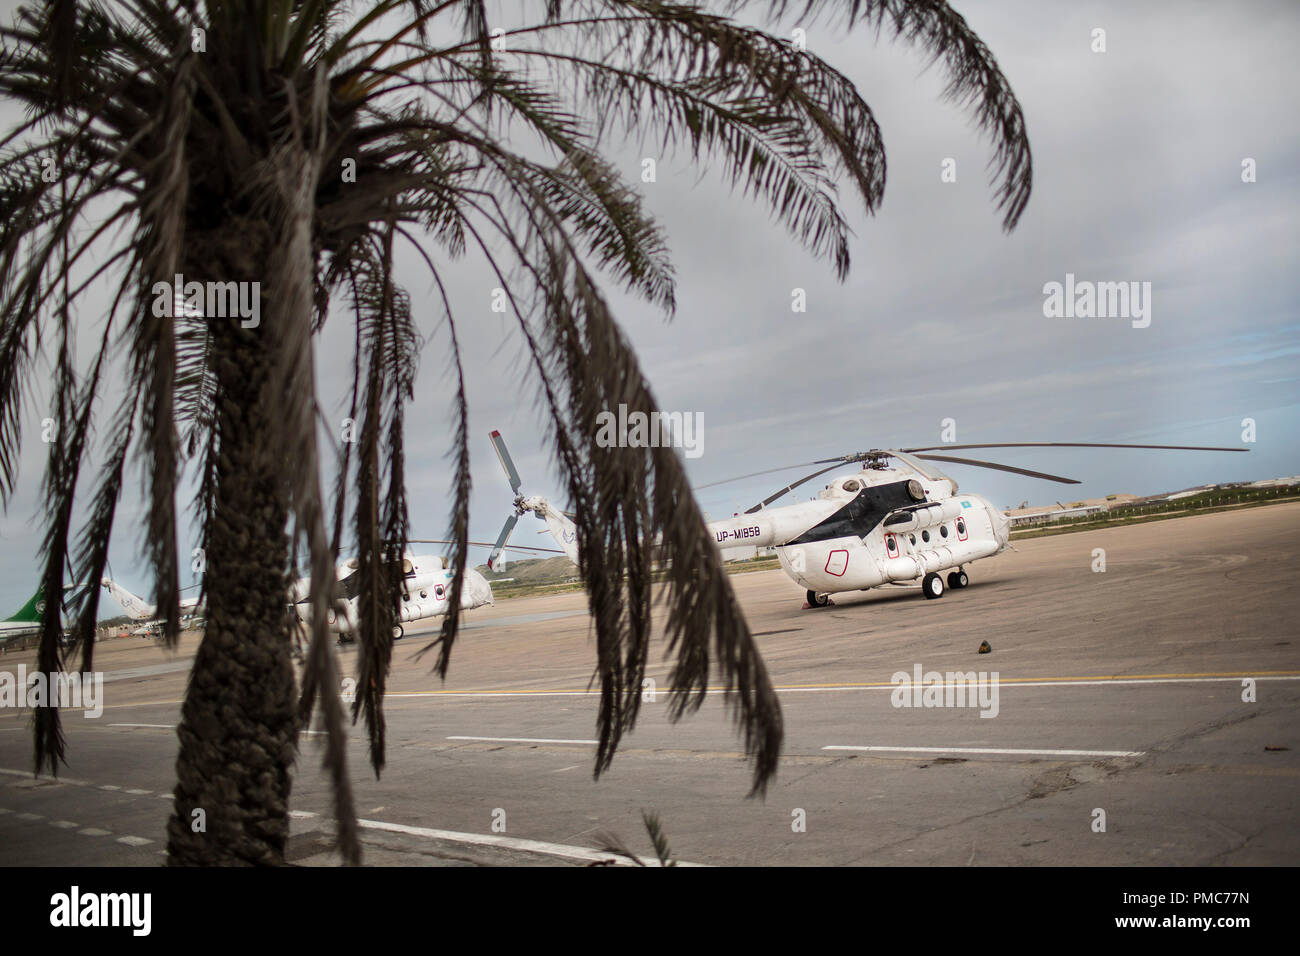 Hubschrauber sind abgebildet auf der Landebahn des Flughafen Aden Abdulle innerhalb der Mission der Afrikanischen Union in Somalia (AMISOM) in Mogadischu, Somalia, Au Stockfoto